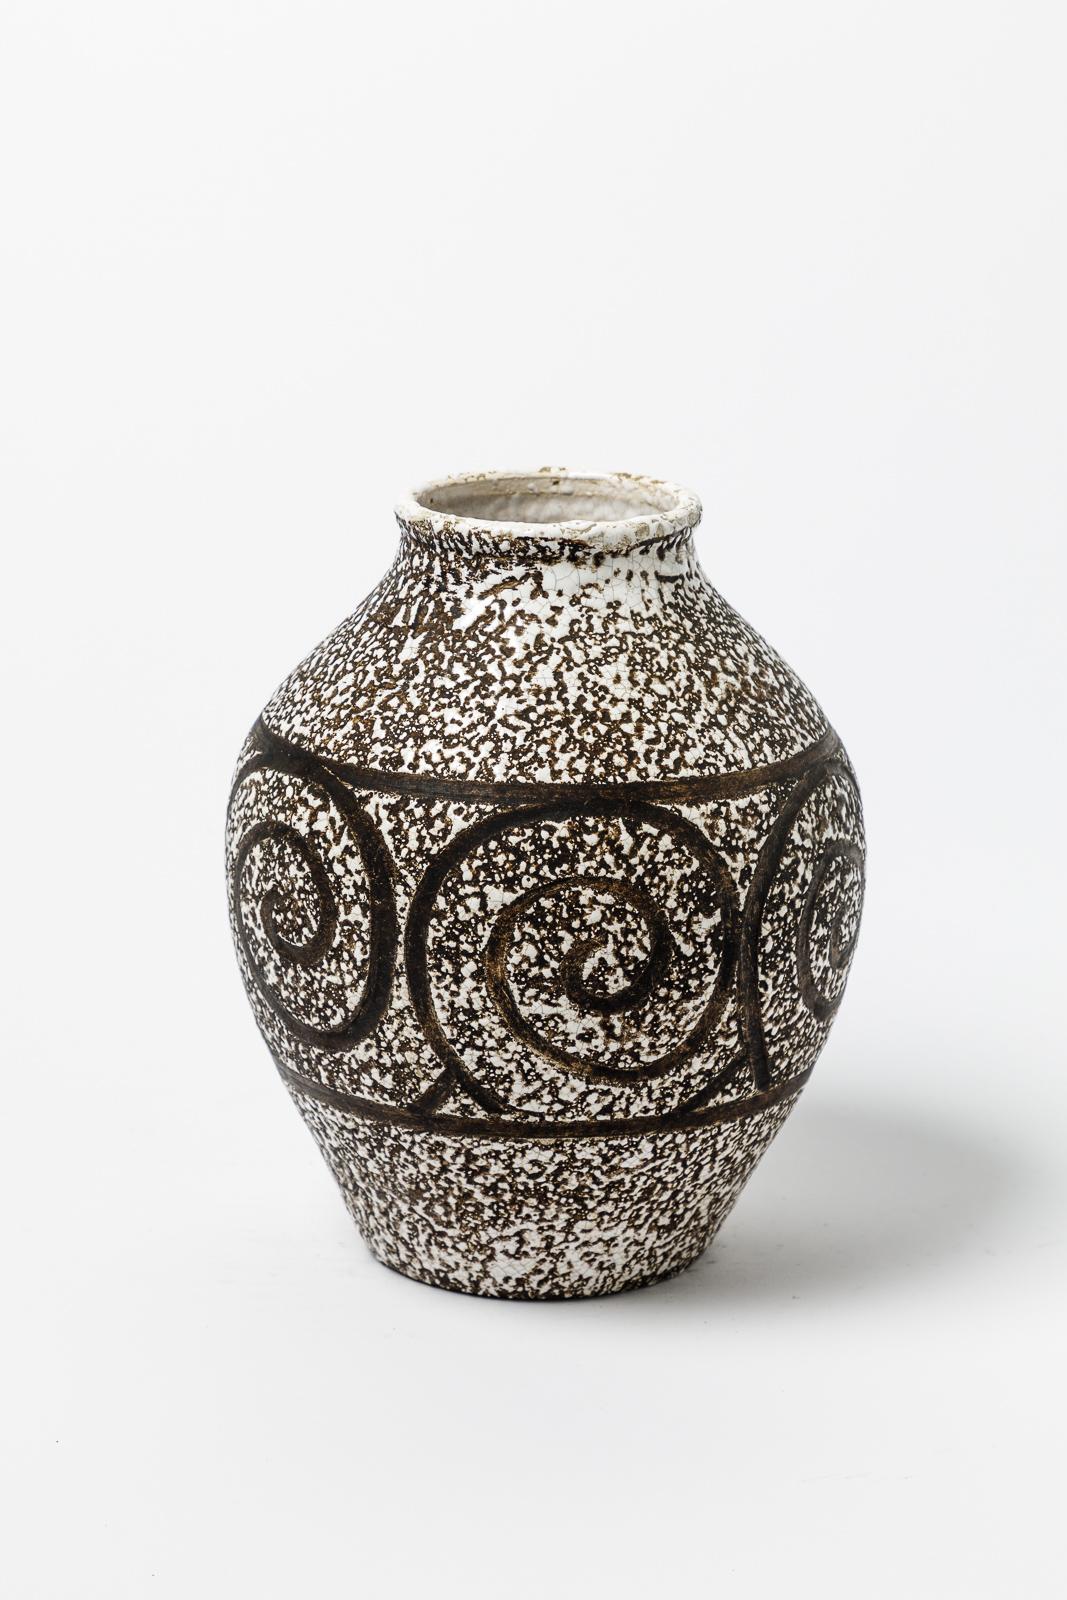 Nach dem Vorbild von Jean Besnard.

Original Art-Deco-Vase aus weißer und schwarzer Keramik.

Ogirinal perfekter Zustand.

Realisiert um 1930.

Maße: Höhe 23 cm
Groß 18 cm.